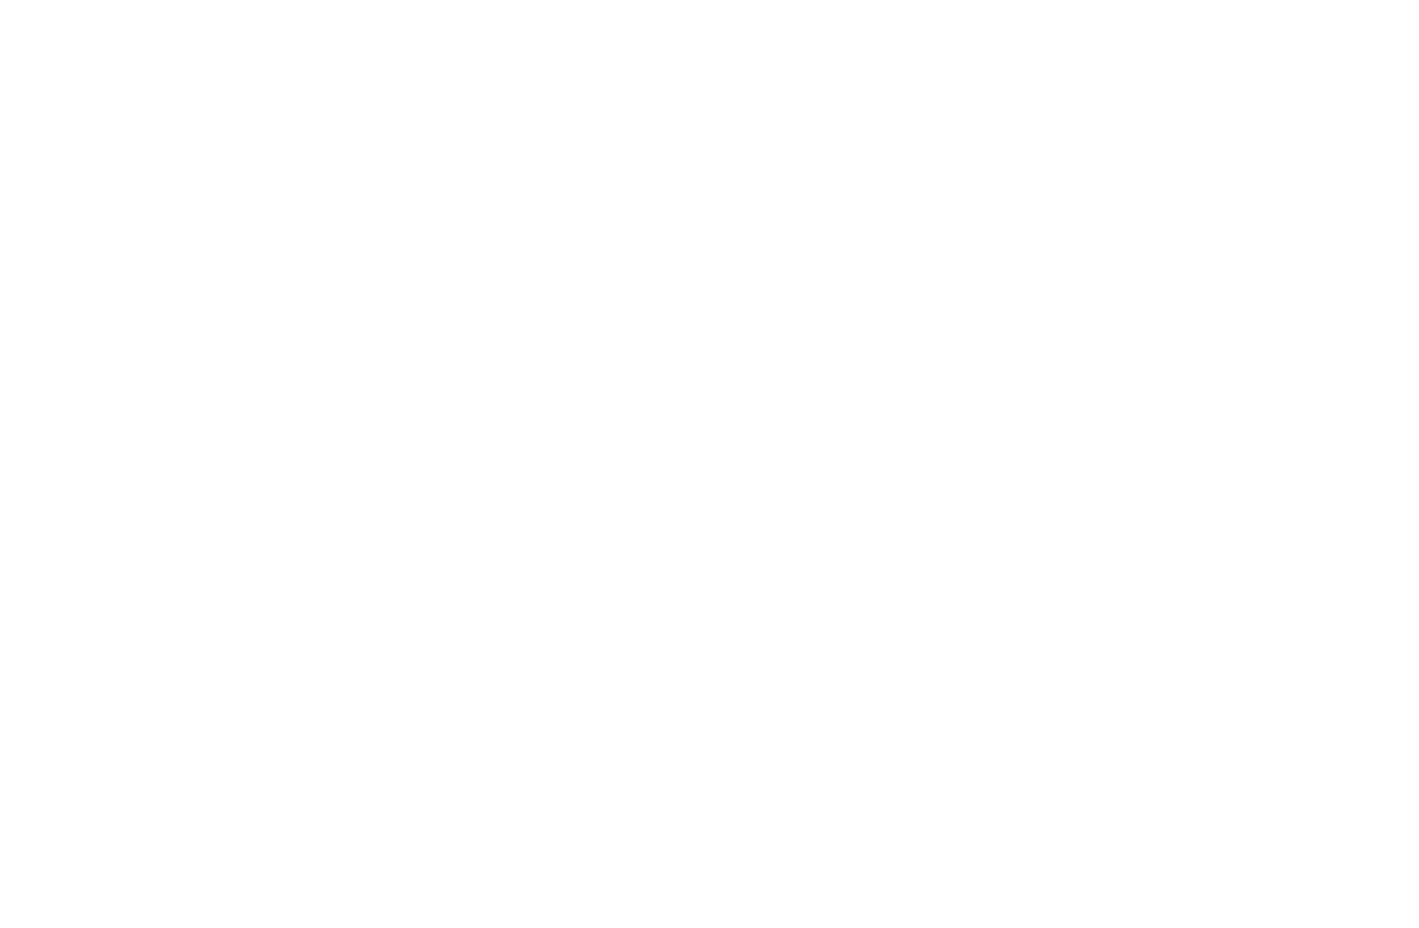 特別強化指定部・強化支援部情報サイト「Brave」誕生！日本福祉大学の特別強化指定部・強化支援部情報サイト「Brave」では、大会結果や地域活動など、学生アスリートの活躍を多角的に発信します。